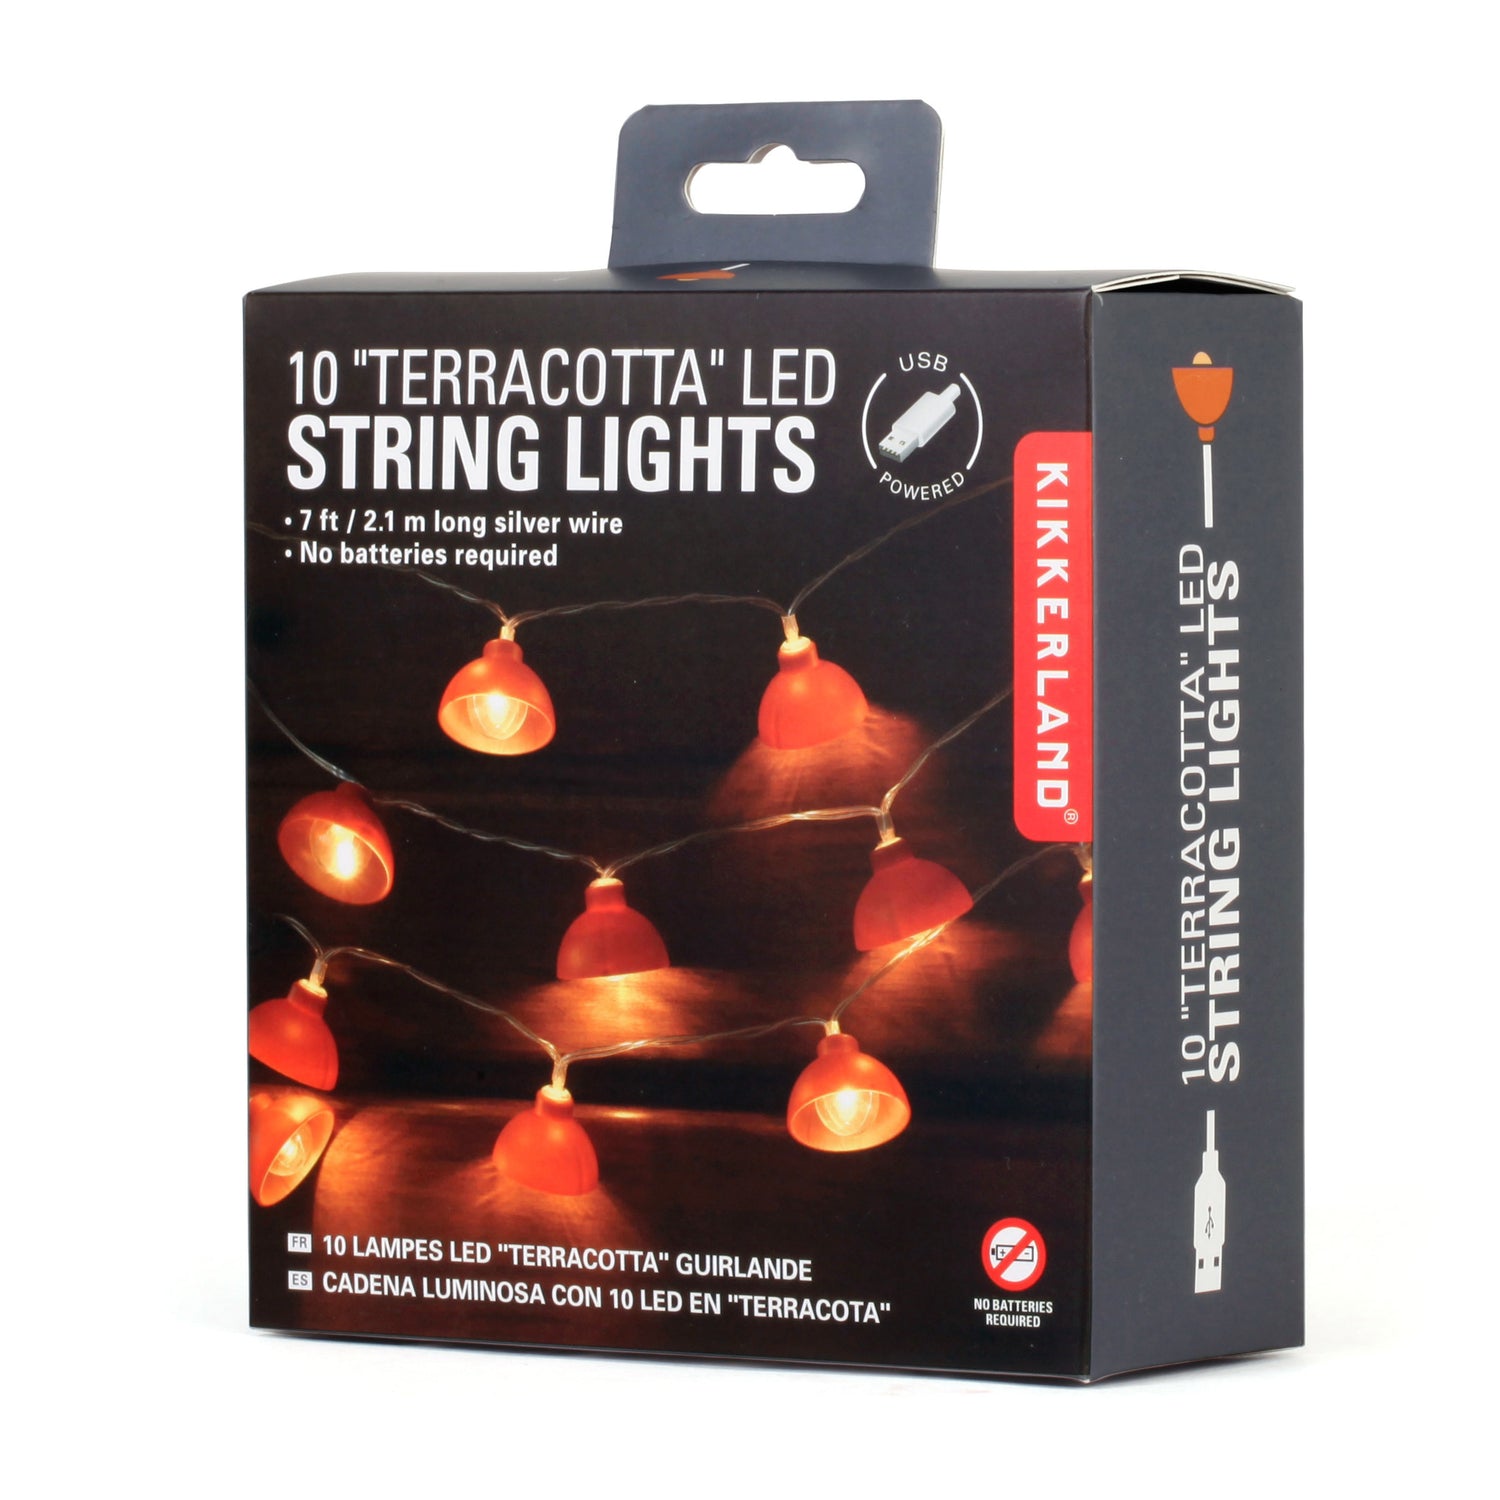 Terracotta String Lights 10 Ft